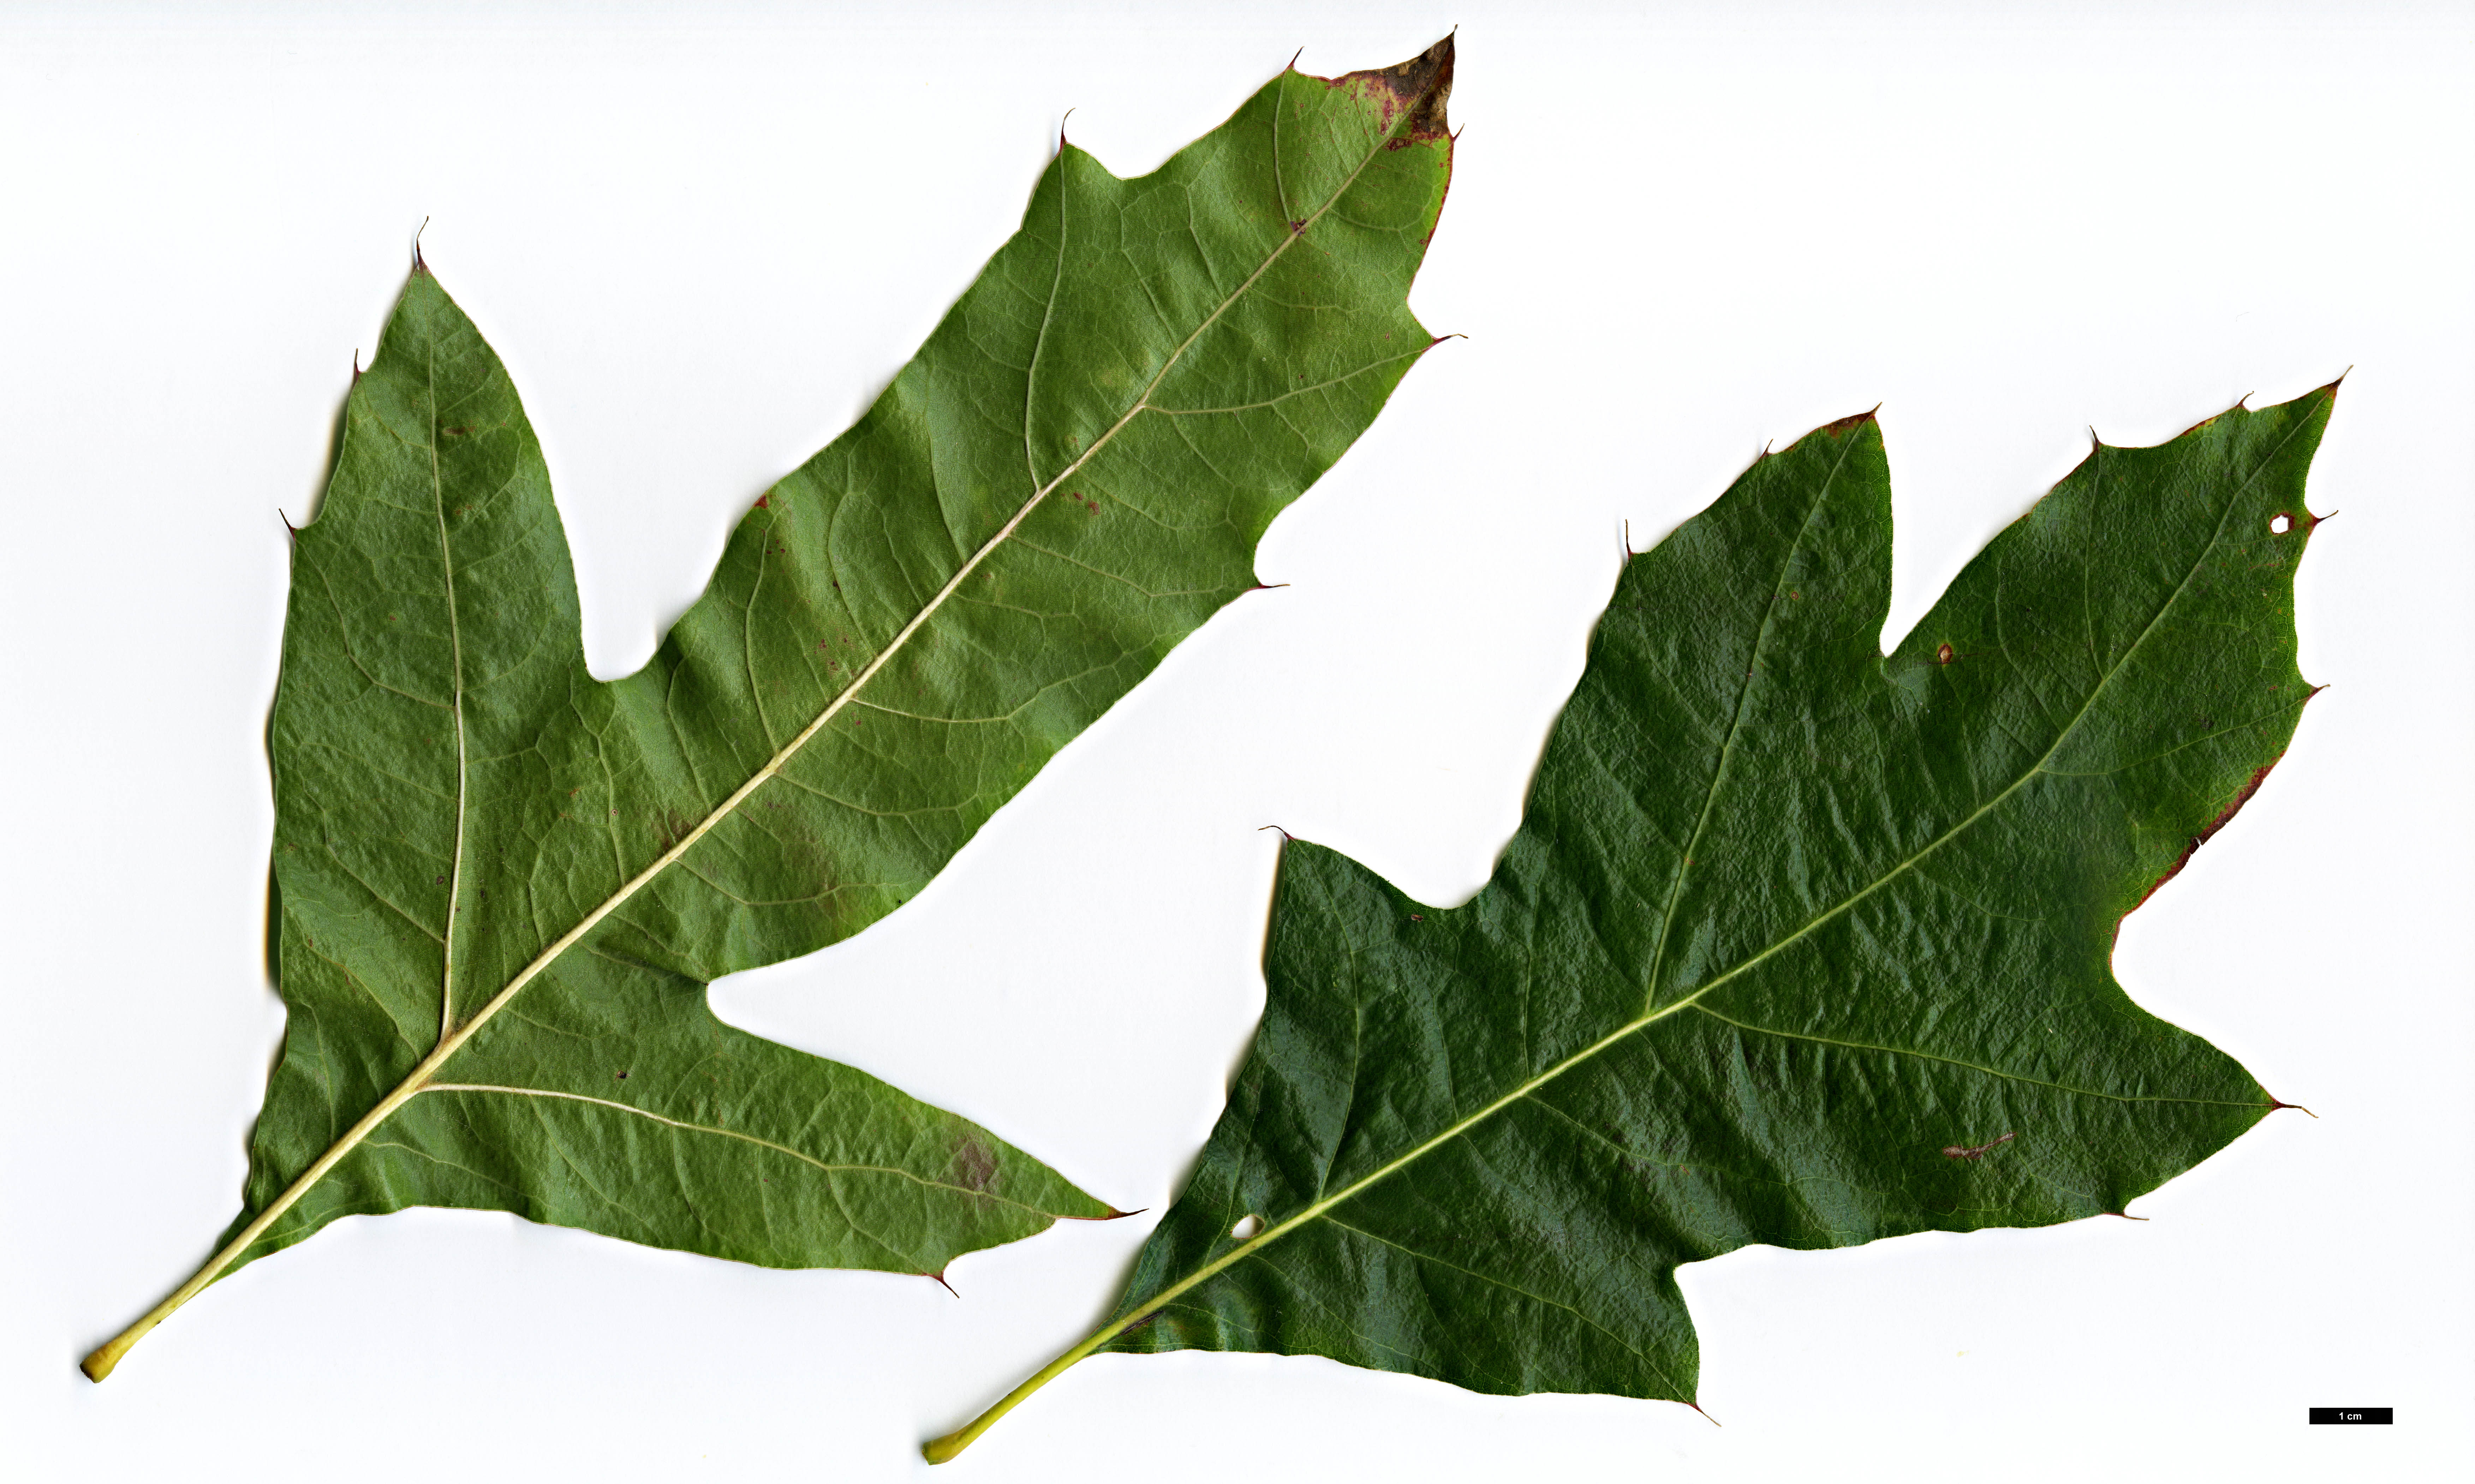 High resolution image: Family: Fagaceae - Genus: Quercus - Taxon: velutina - SpeciesSub: 'Habiflax'